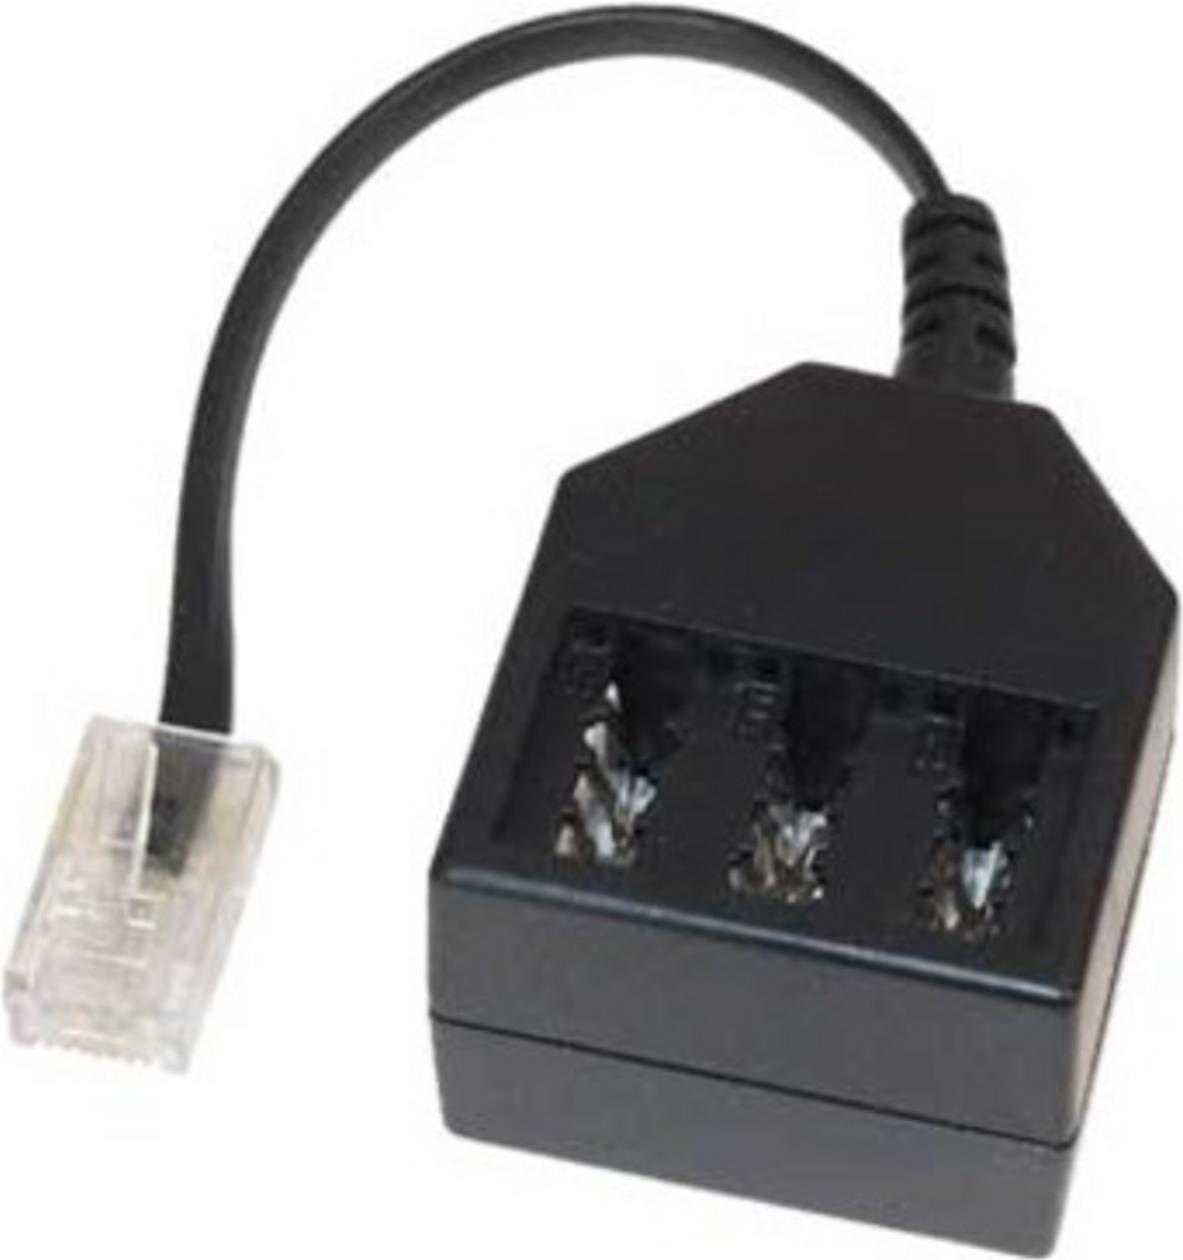 ShiverPeaks S/CONN maximum connectivity Telefon ISDN Adapter-Western-Stecker 6/4 auf TAE Kupplung NFN, 0,2m (71017-1) von ShiverPeaks